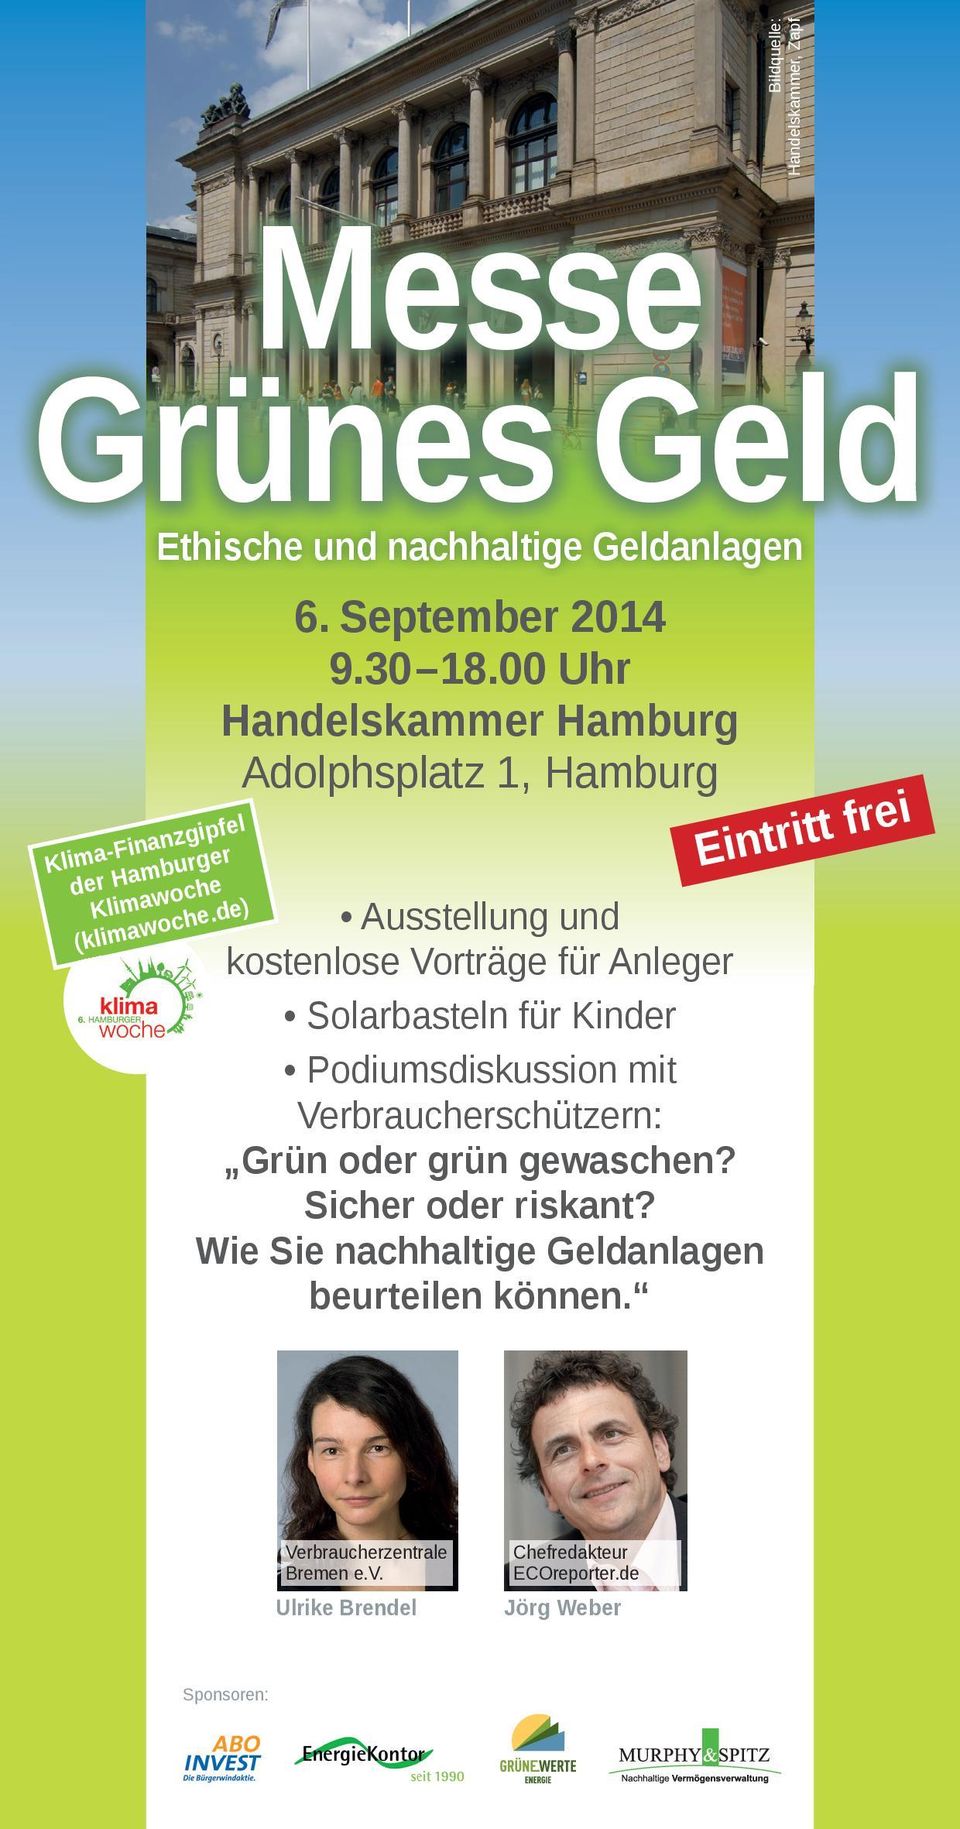 00 Uhr Handelskammer Hamburg Adolphsplatz 1, Hamburg Ausstellung und kostenlose Vorträge für Anleger Solarbasteln für Kinder